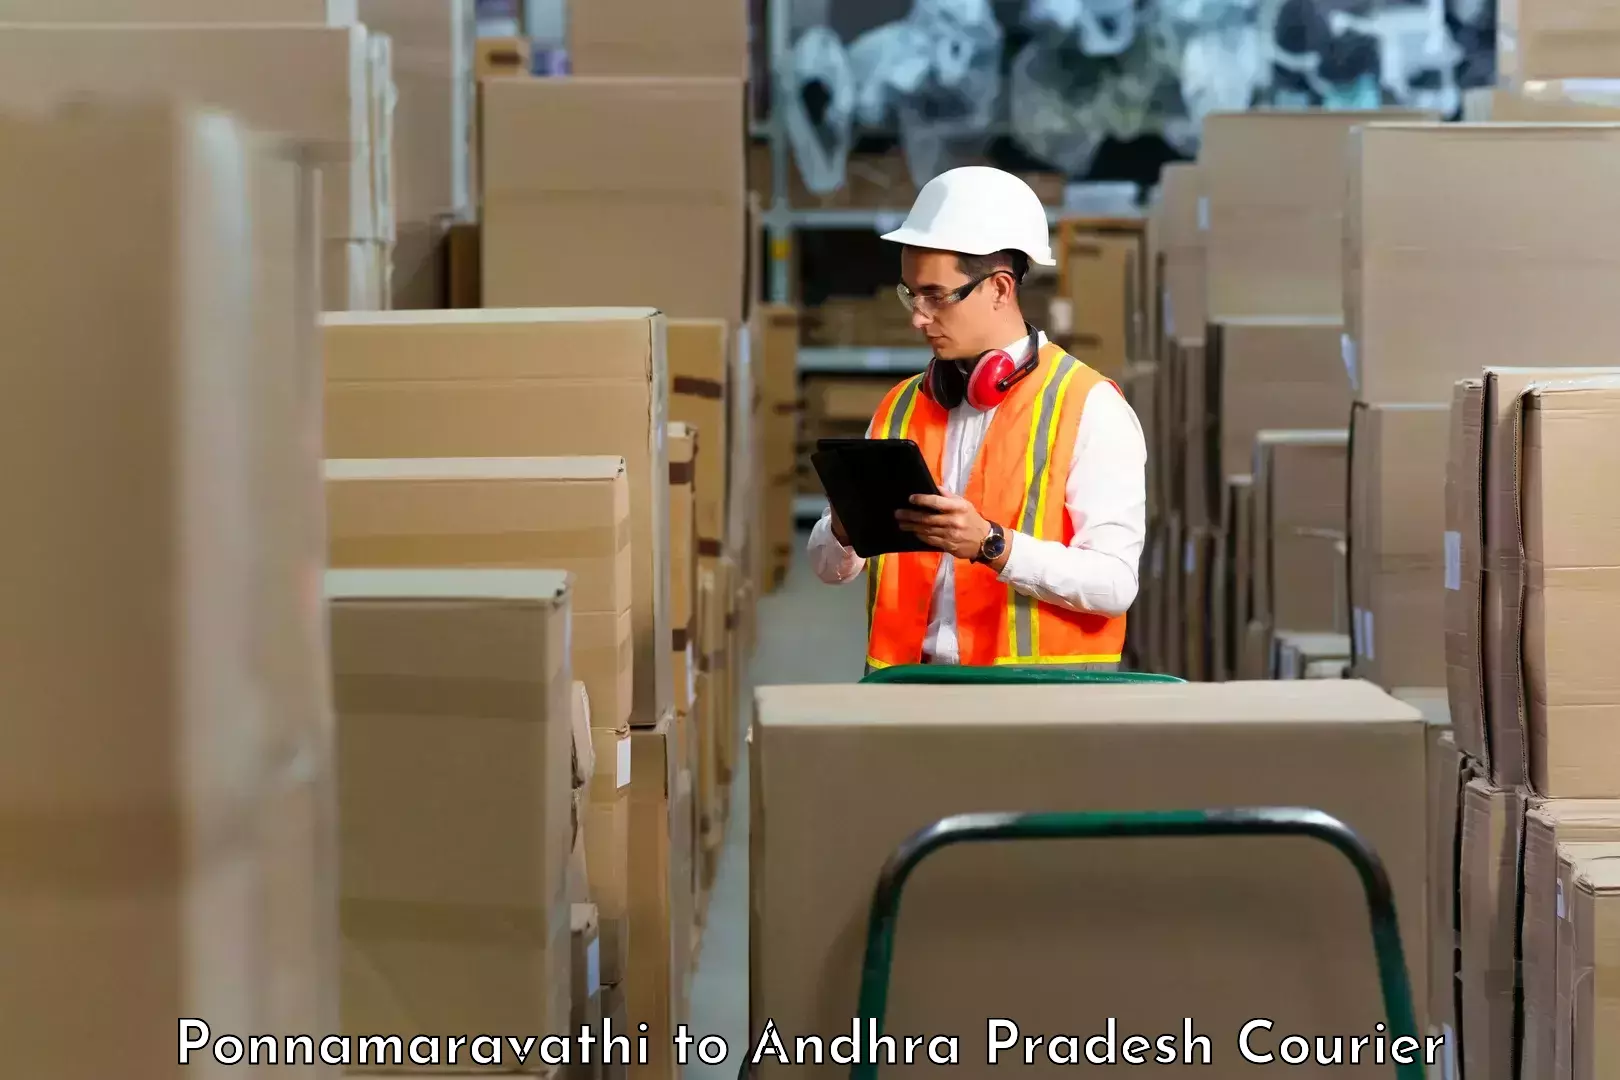 Scalable shipping solutions Ponnamaravathi to Veldurthi